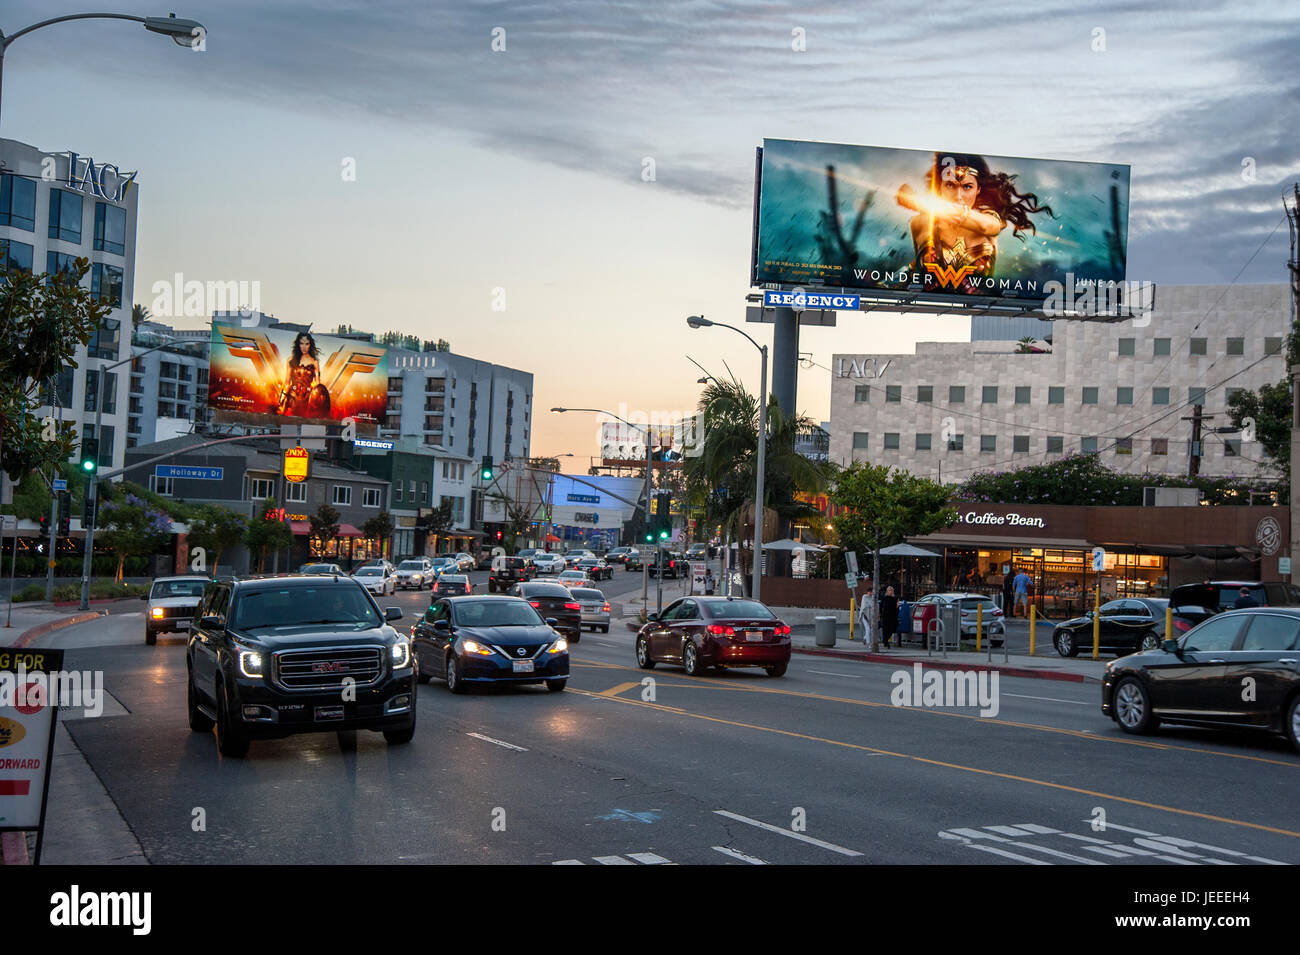 El Sunset Strip al anochecer con iluminados carteles promoviendo la película Wonder Woman en Los Angeles, CA. Foto de stock